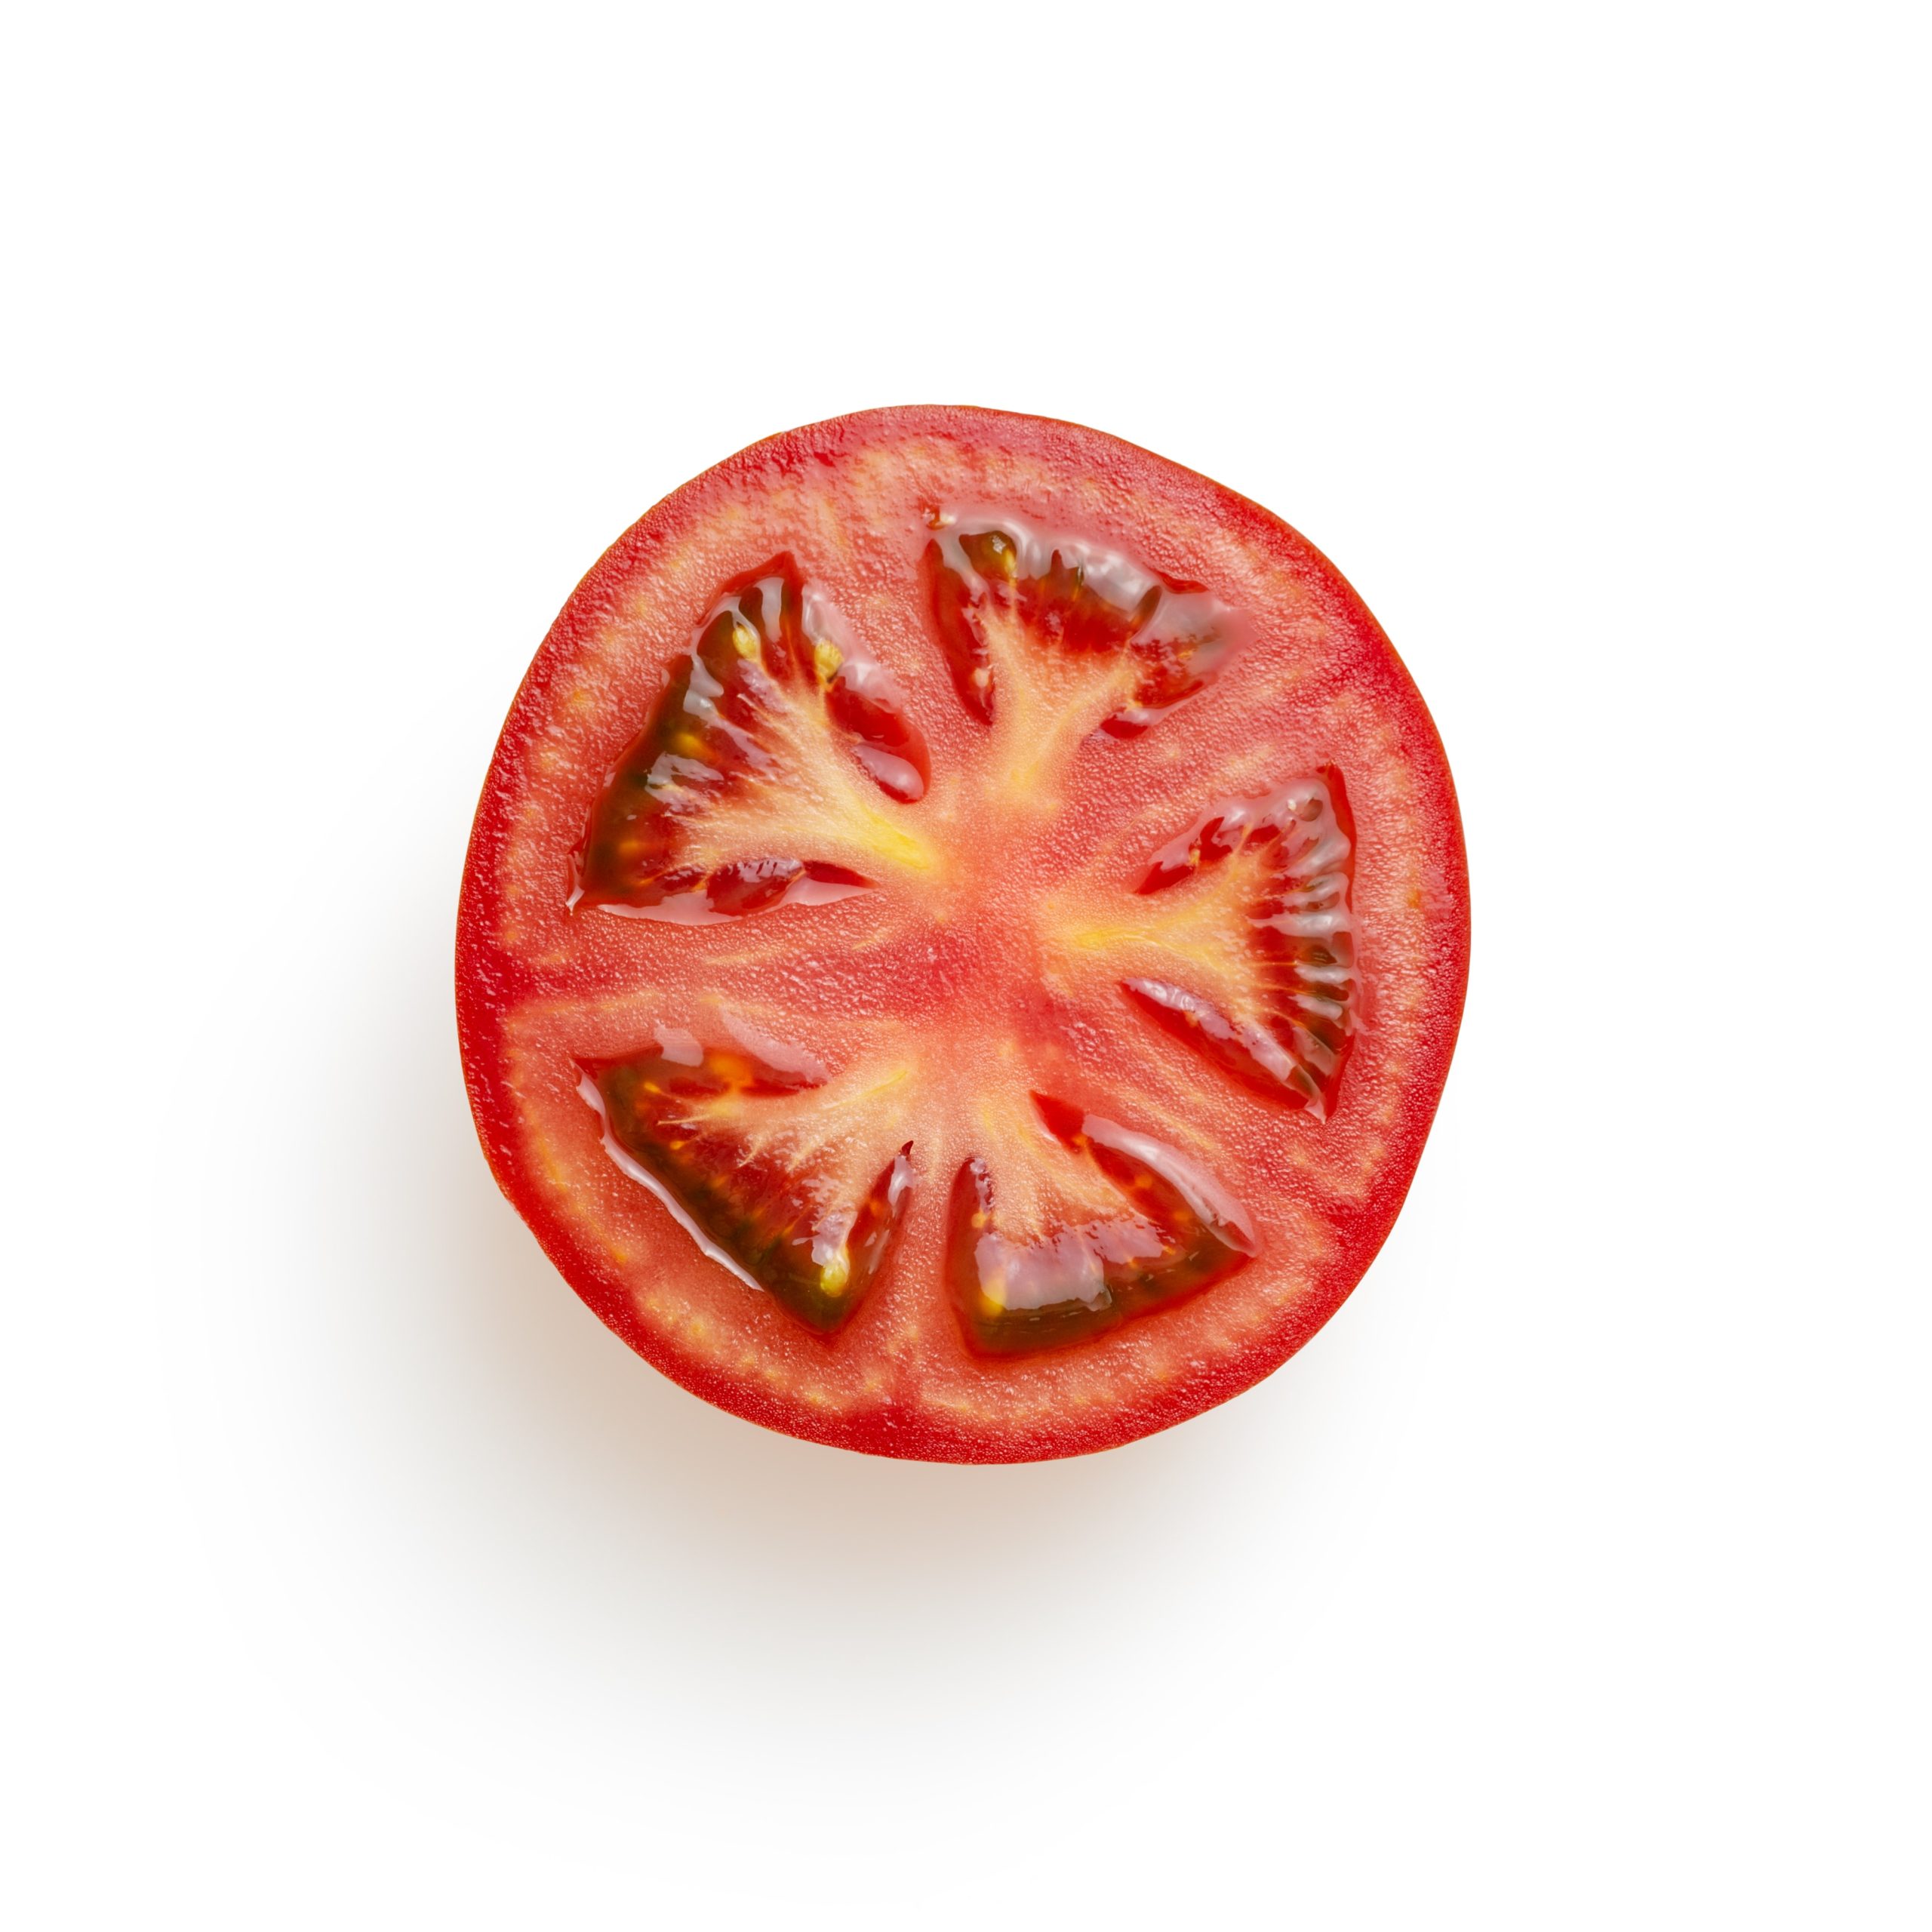 cut tomato